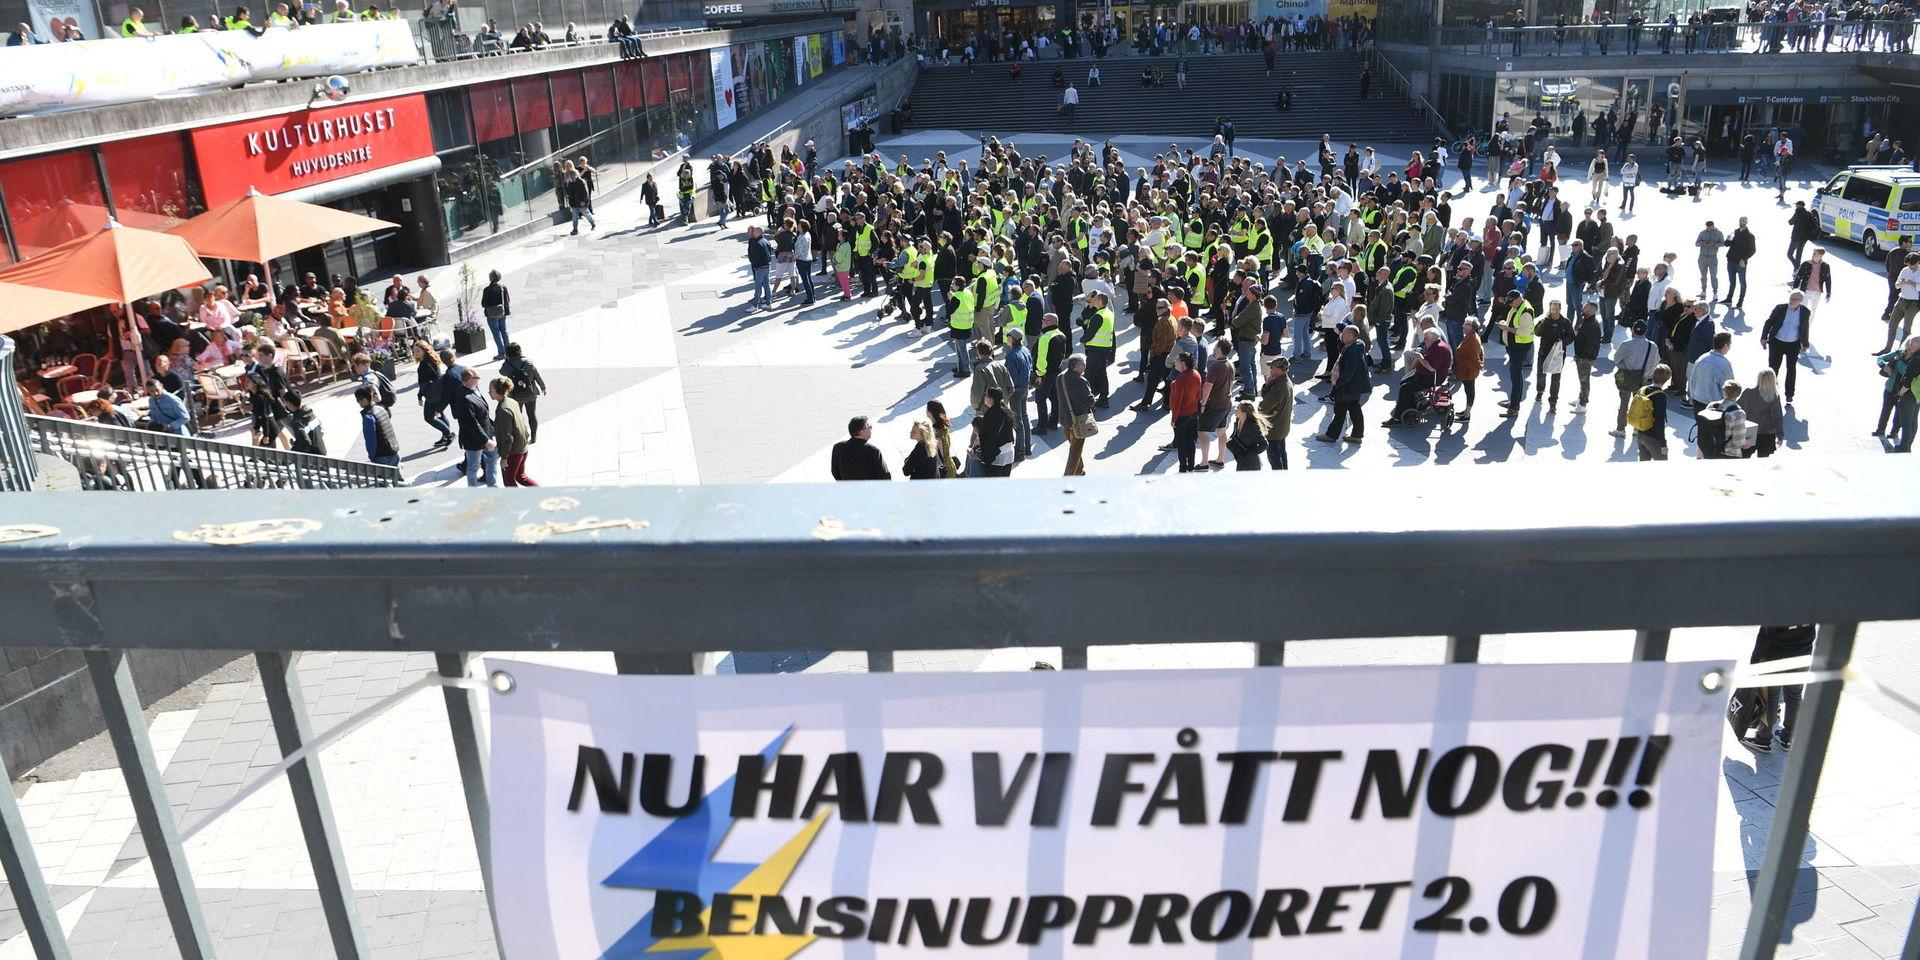 STOCKHOLM 20190531 Bensinupproret 2.0 håller protestdemonstration på Sergels torg. Foto Fredrik Sandberg / TT kod 10080